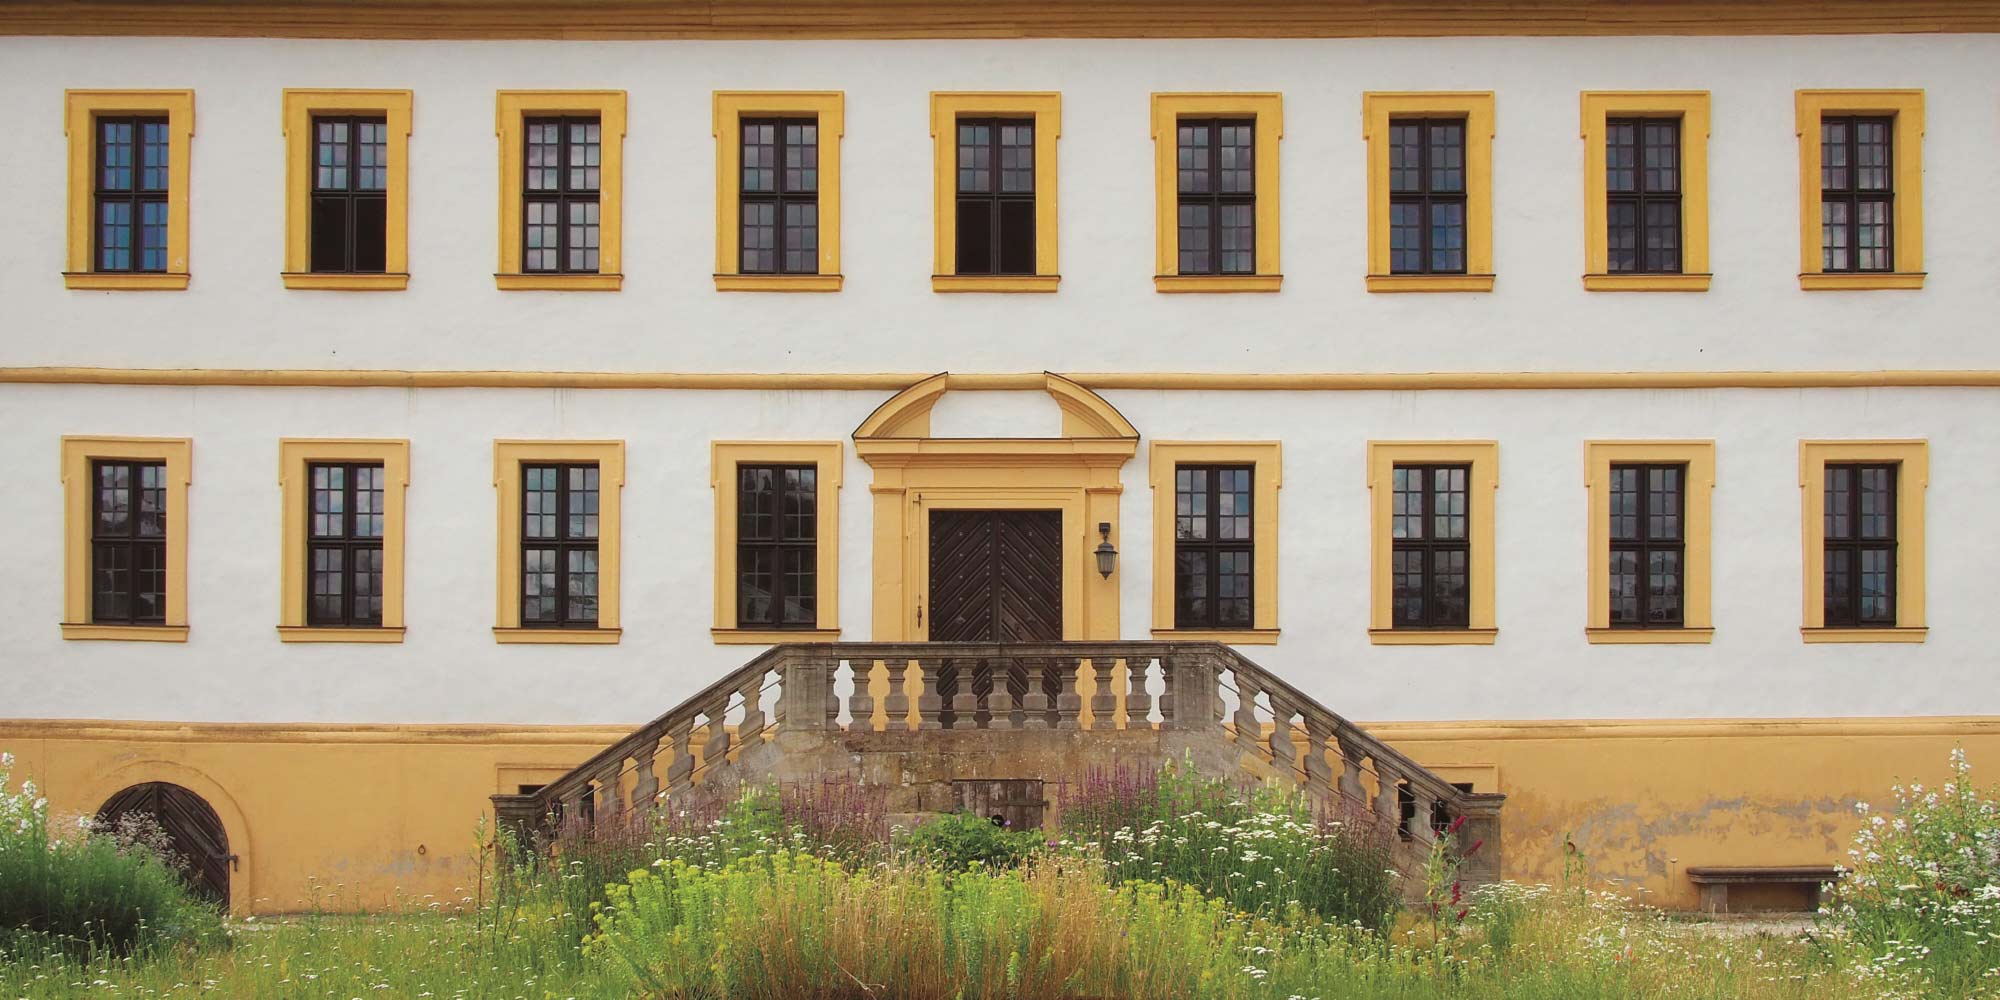 Schloss Weissenbrunn